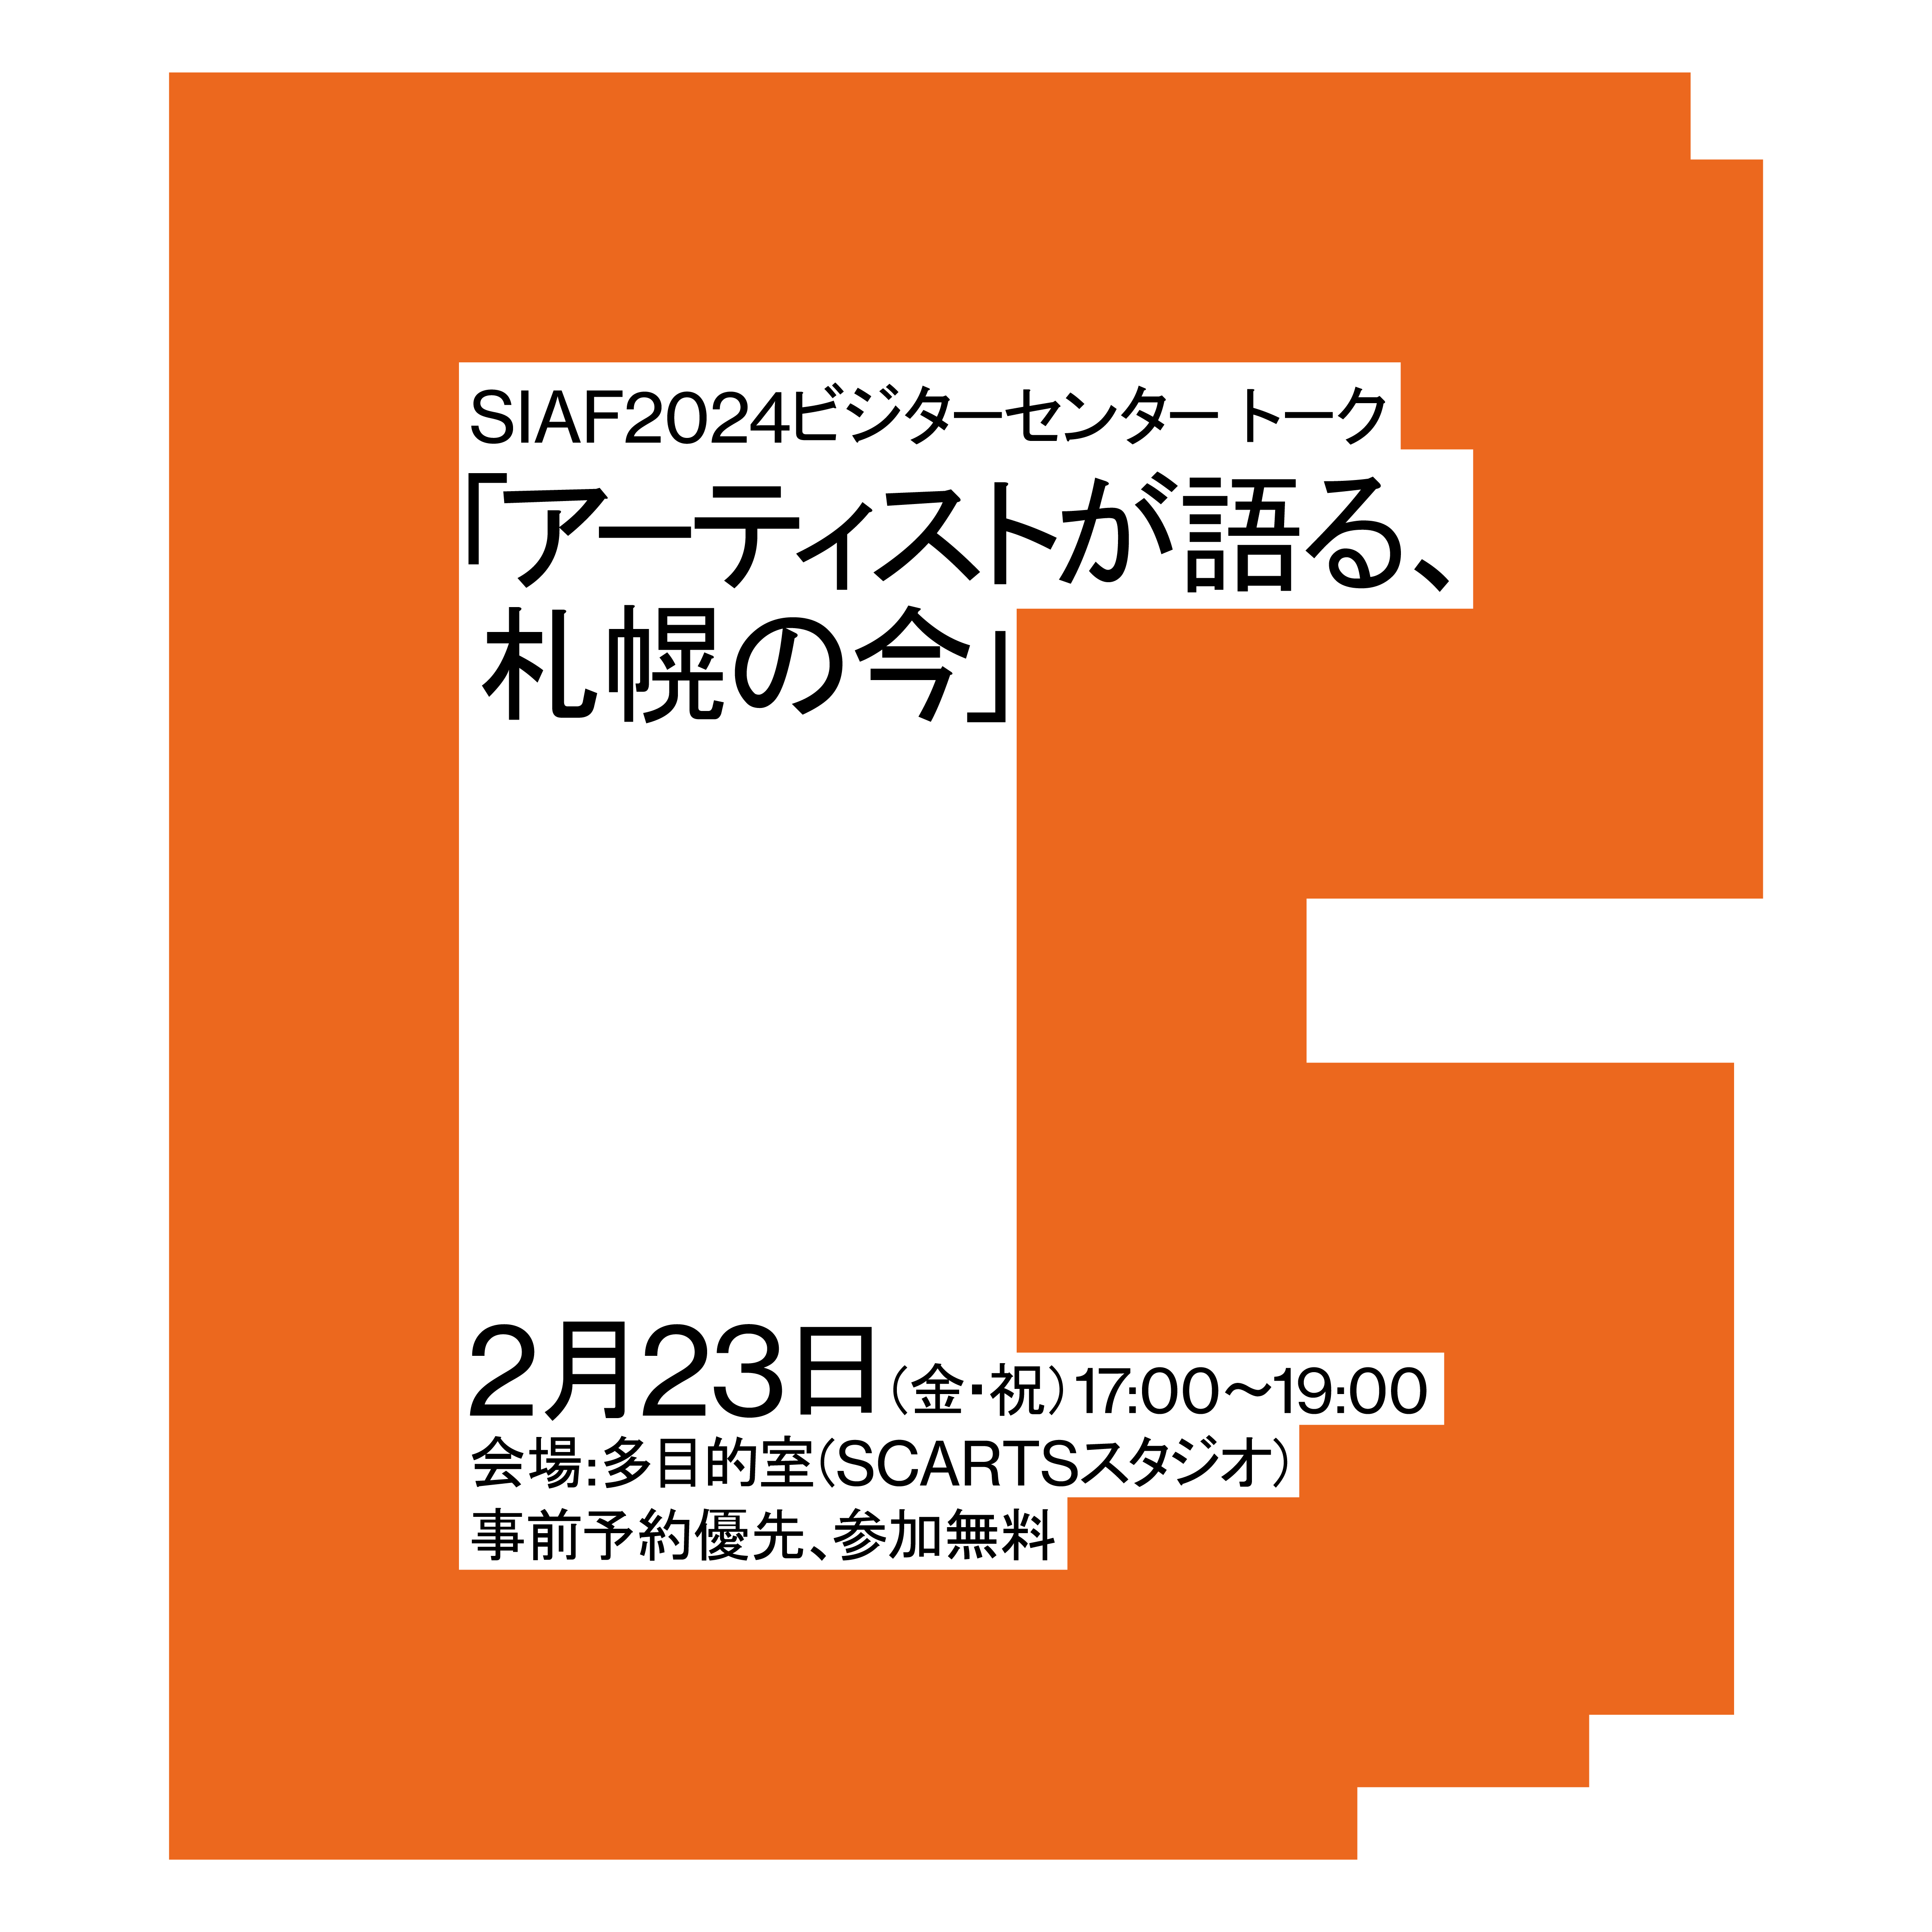 SIAF2024ビジターセンター トーク「アーティストが語る、札幌の今」イメージ